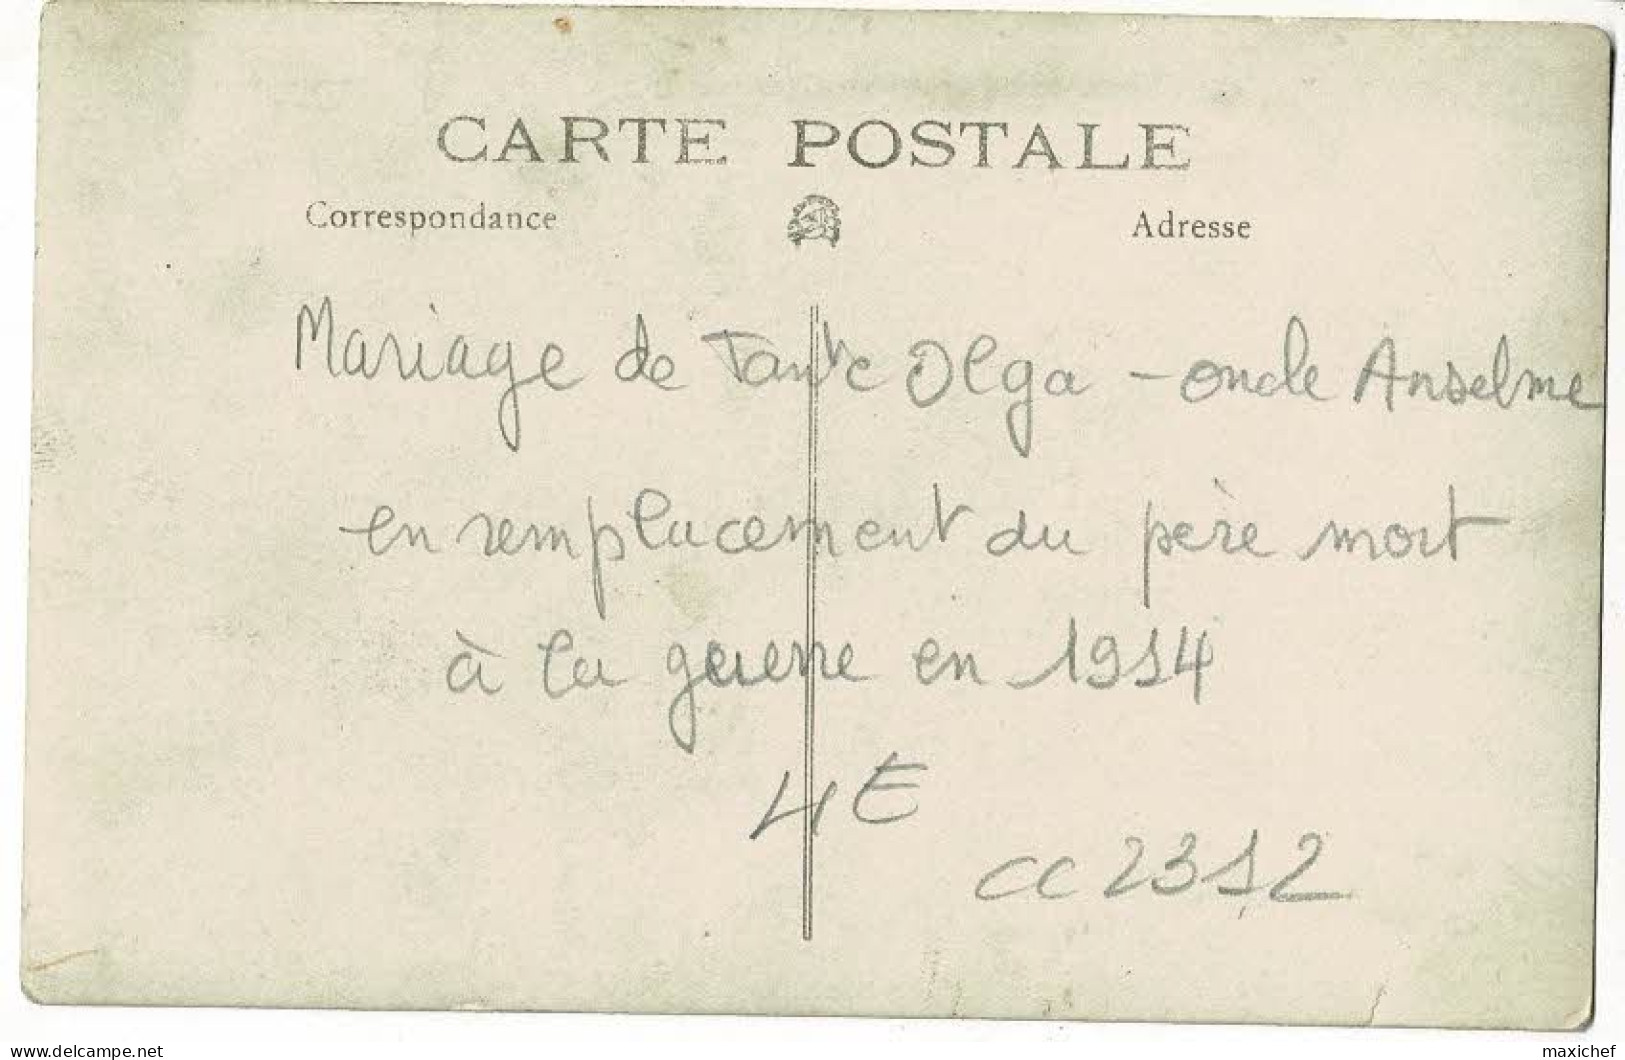 Carte Photo - Mariage De Tante Olga, L'oncle Anselme Remplace Le Père Mort à La GG - 1931 - Genealogy